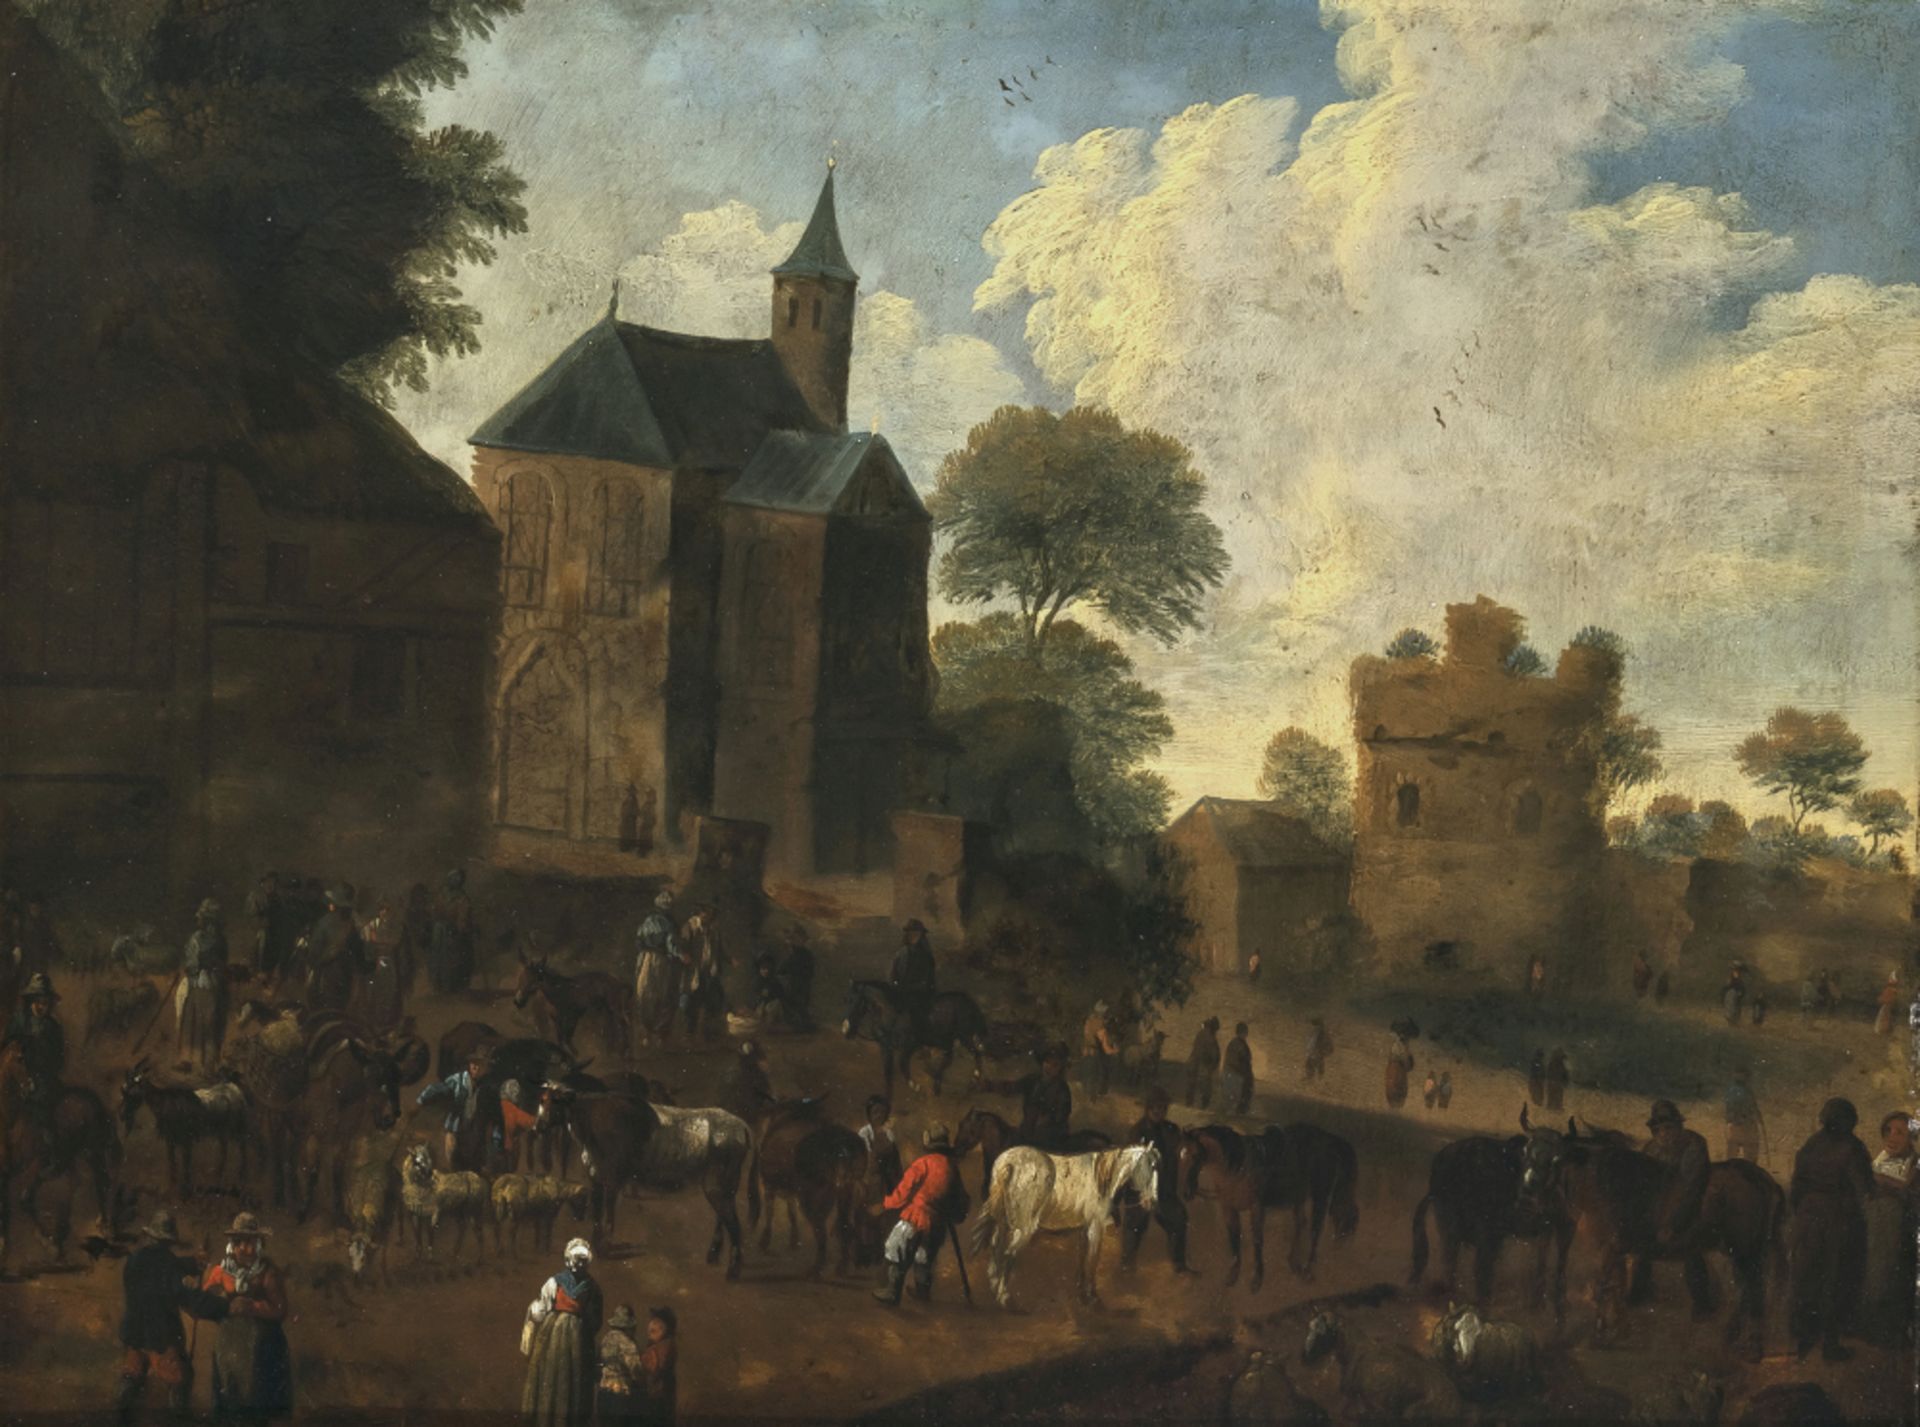 Niederlande 17th century - Cattle market